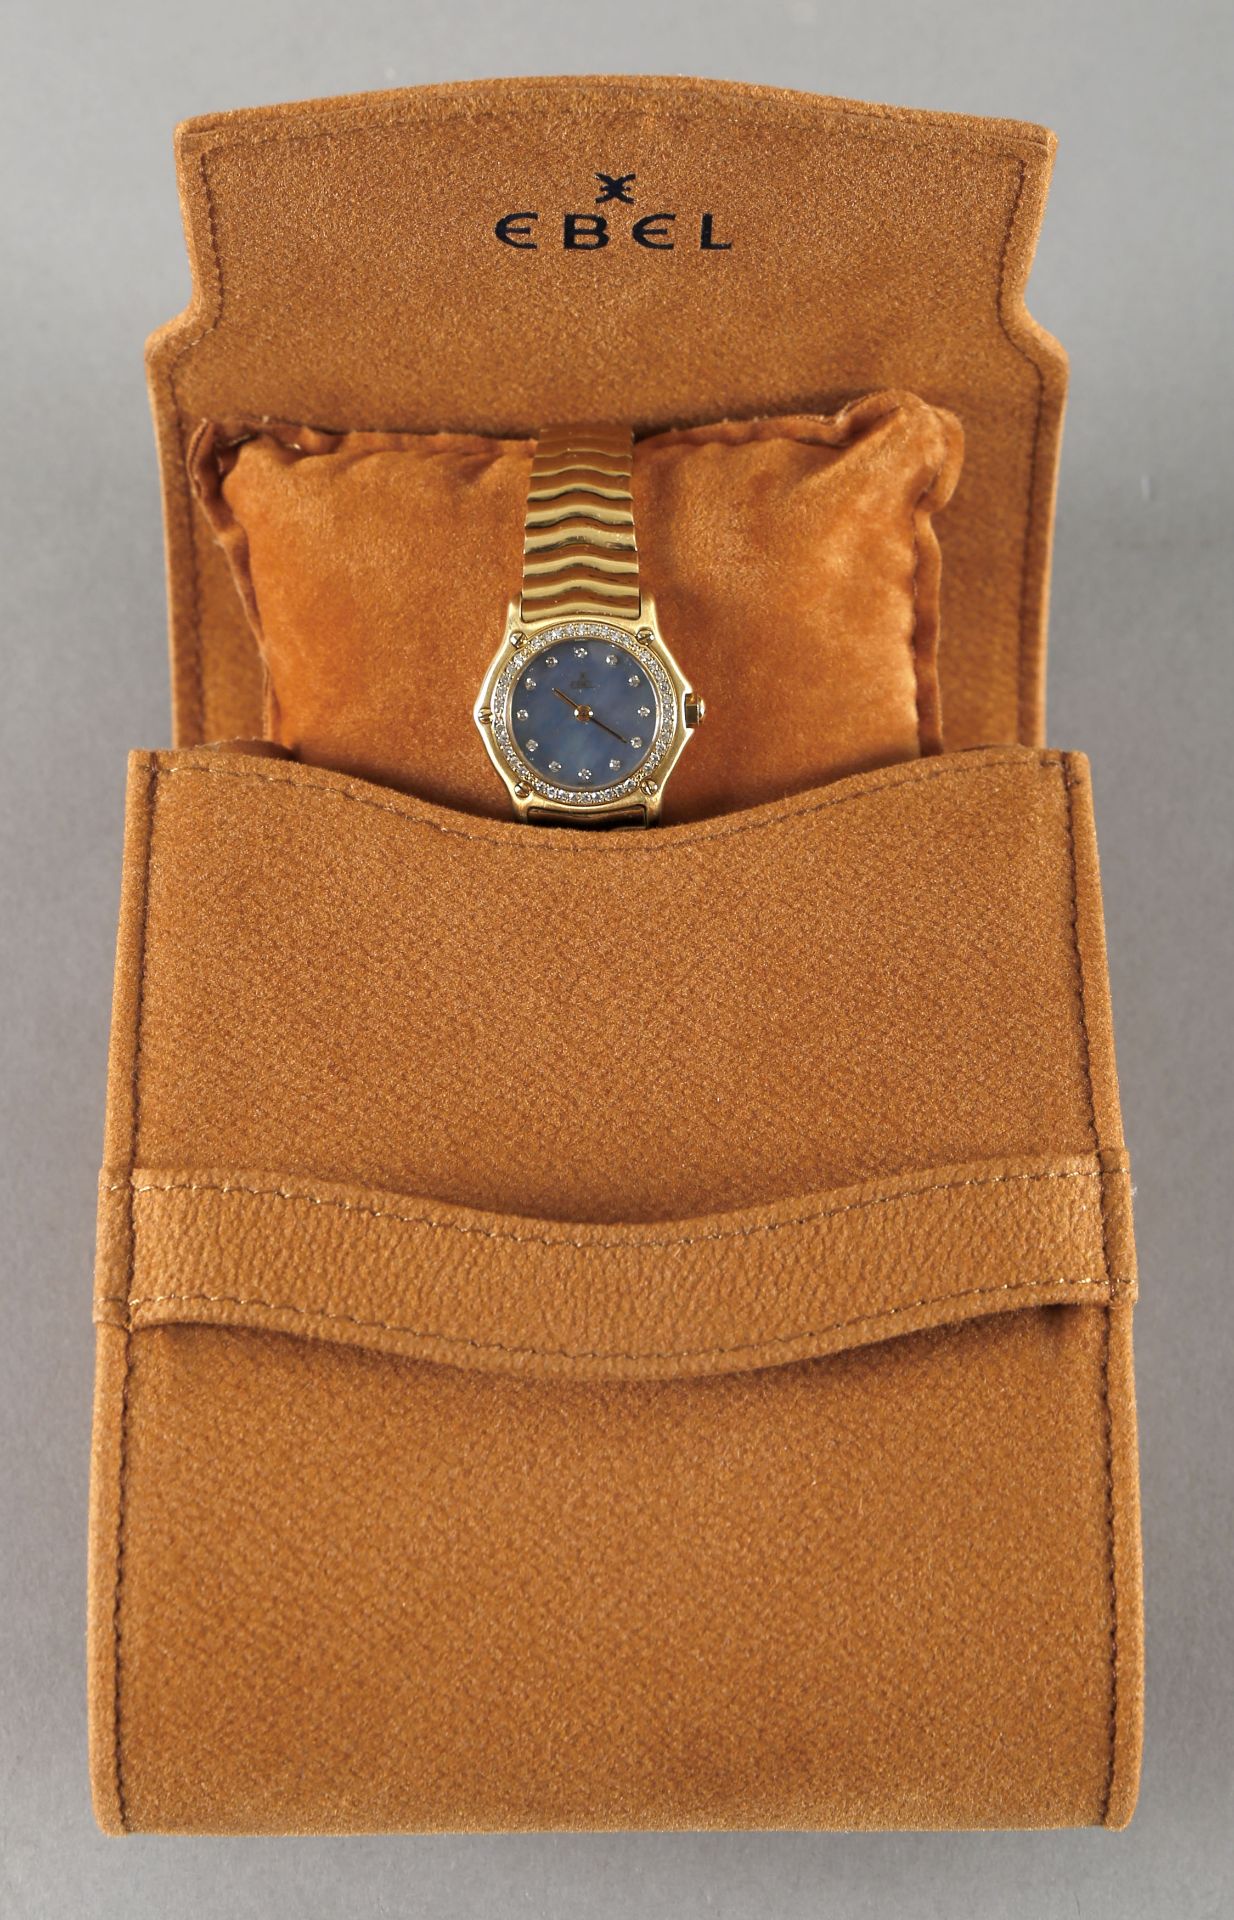 Ebel 1911 Damenarmbanduhr mit Brillanten, 750er GG, 2001 - Image 2 of 2